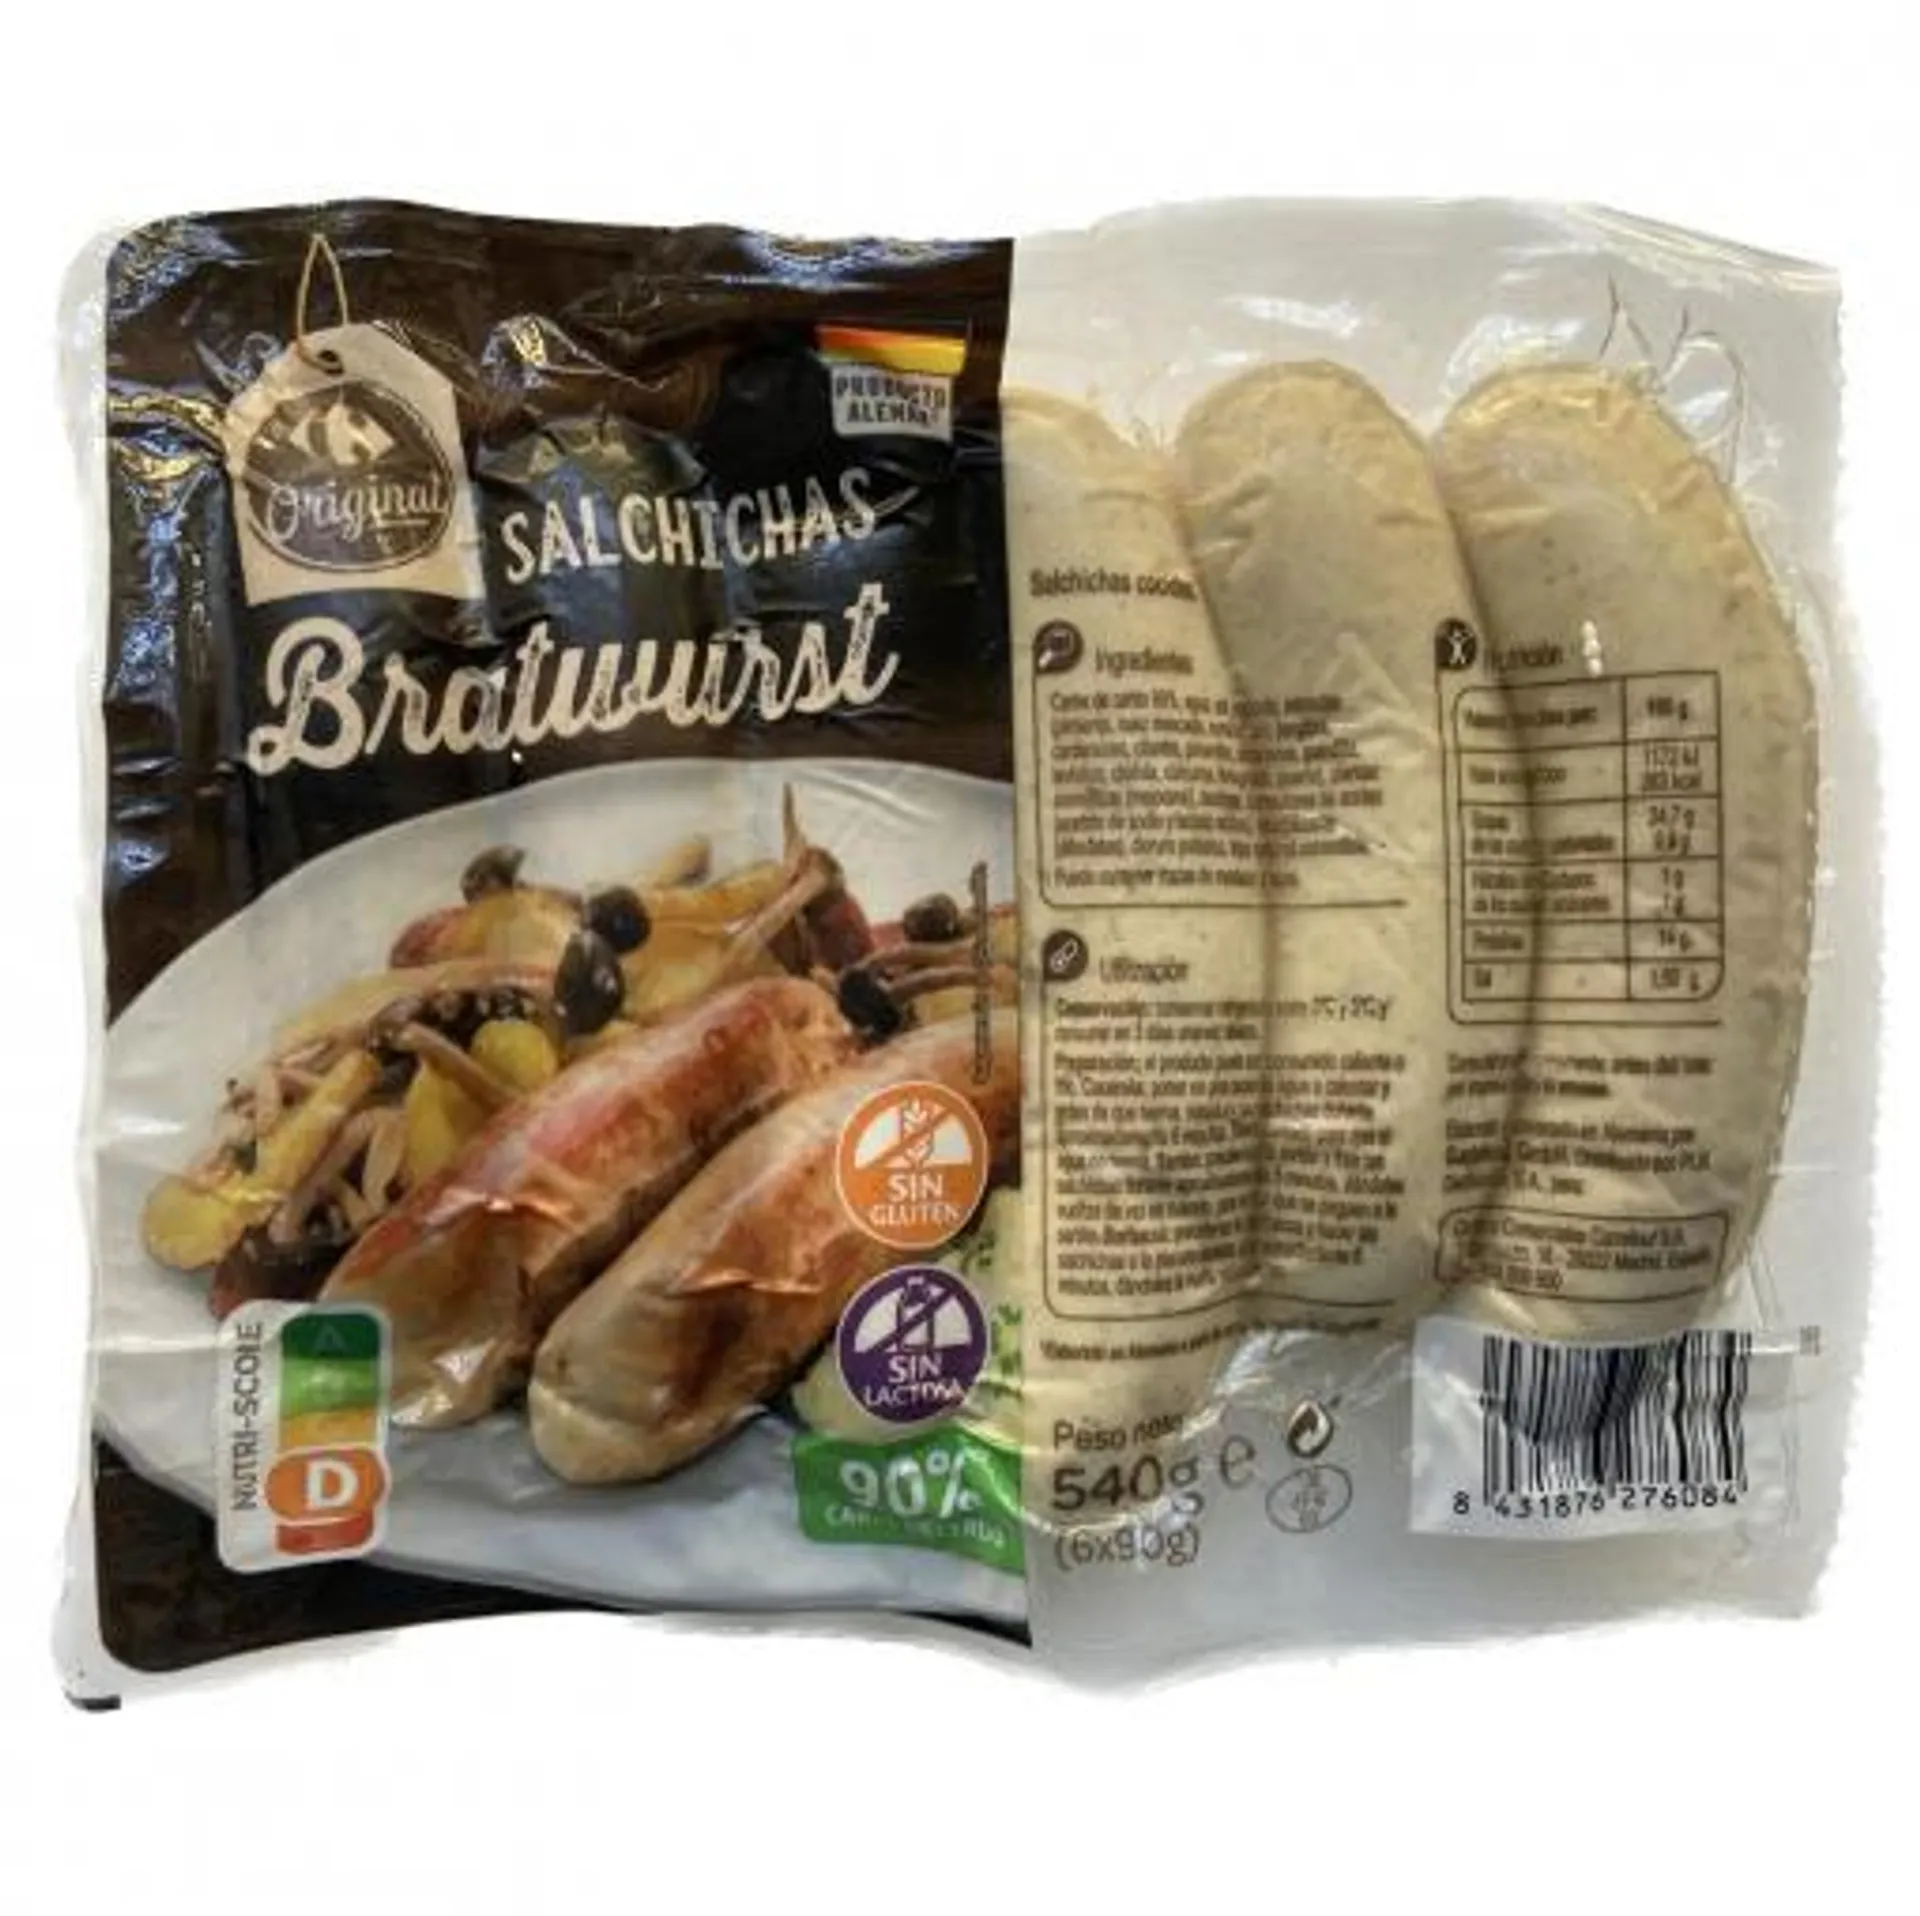 Salchichas Bratwurst Carrefour Original sin gluten y sin lactosa 540 g.